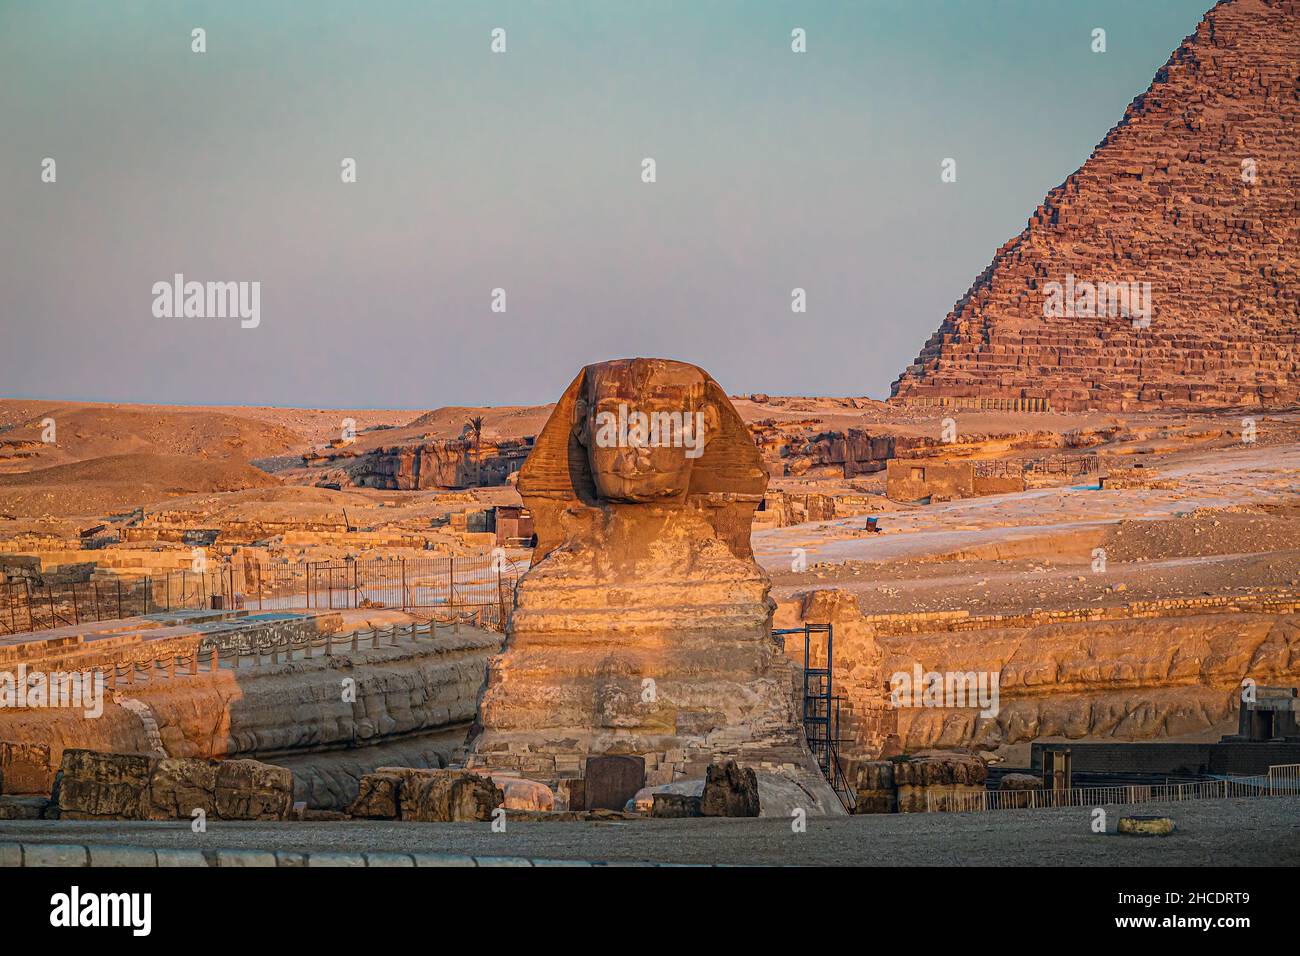 Le grand Sphinx de Gizeh vu à l'heure d'or du lever du soleil.Photo prise le 21st juin 2021, sur le plateau de Gizeh, le Caire, Égypte. Banque D'Images